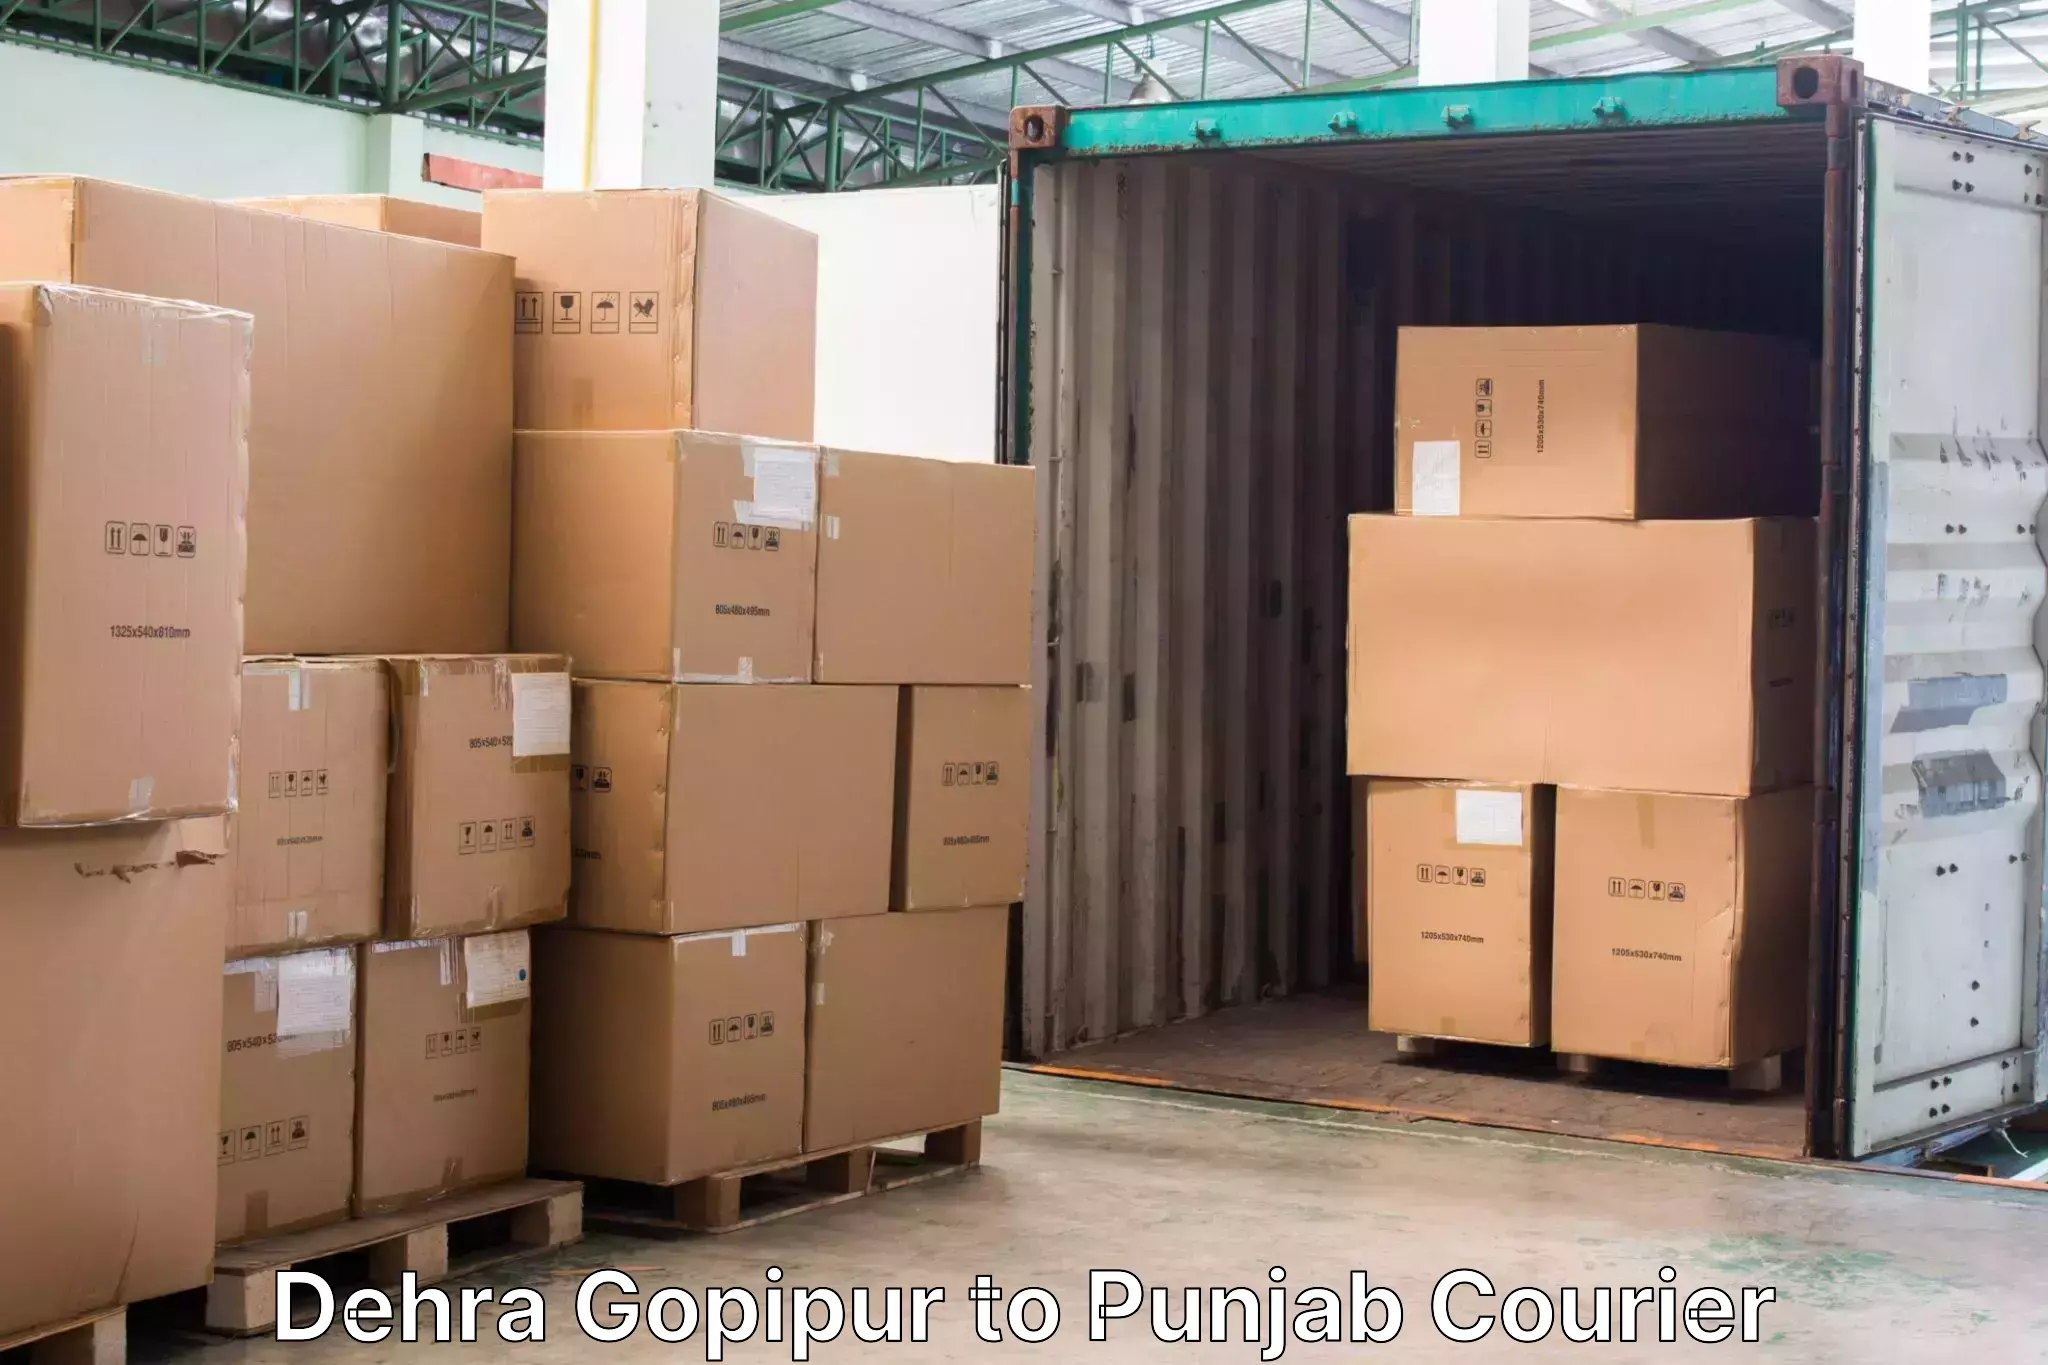 Same day luggage service Dehra Gopipur to Punjab